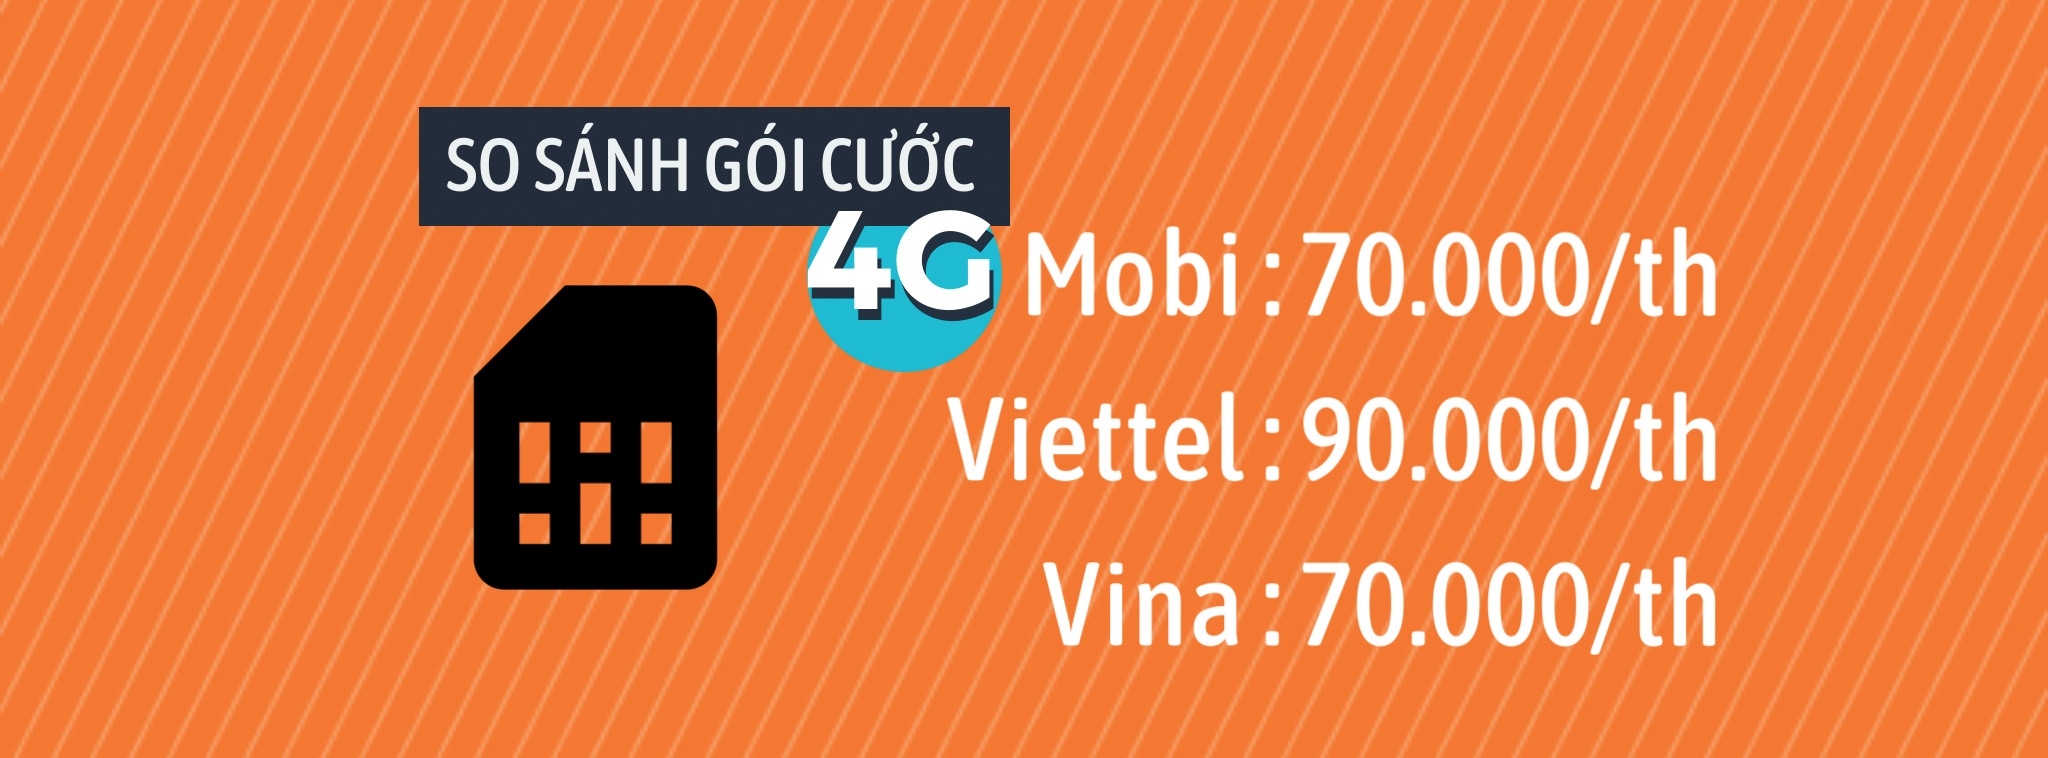 So sánh gói cước 4G của từng nhà mạng: Mobifone, Viettel, Vinaphone